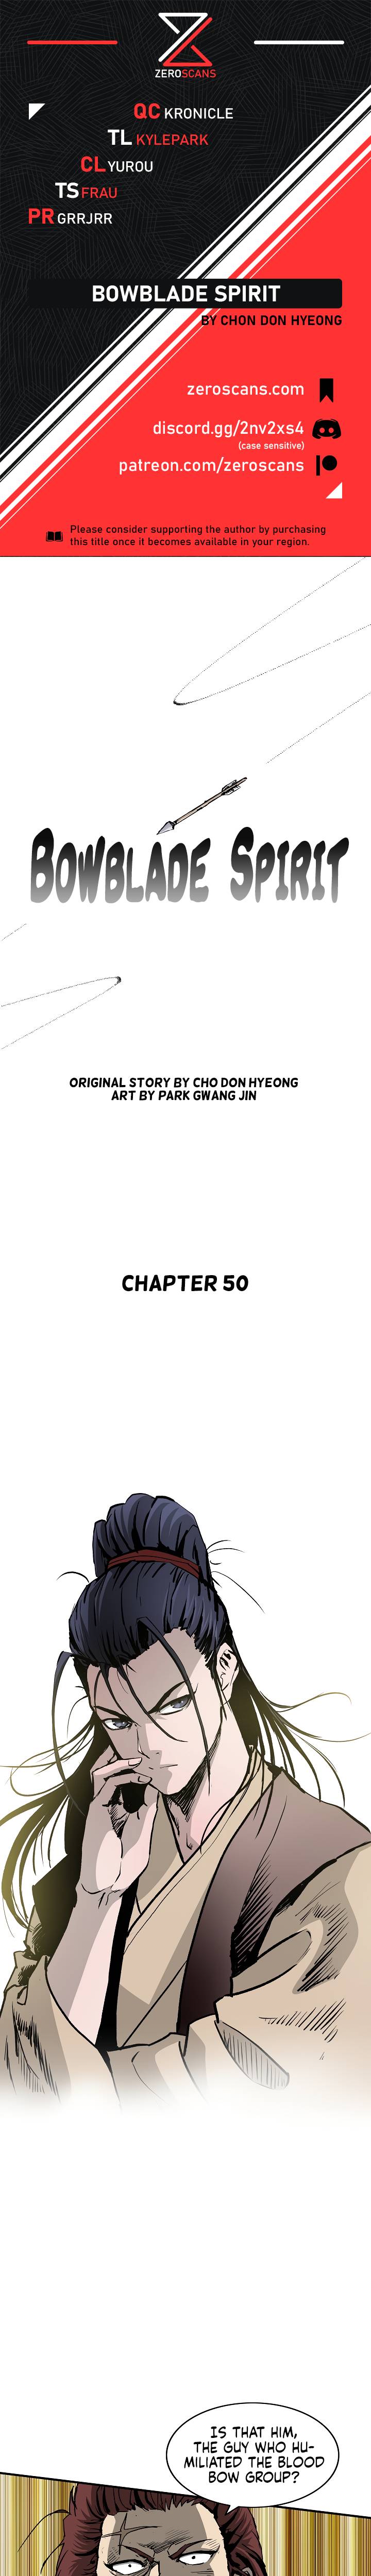 Bowblade Spirit - Chapter 50 Page 1